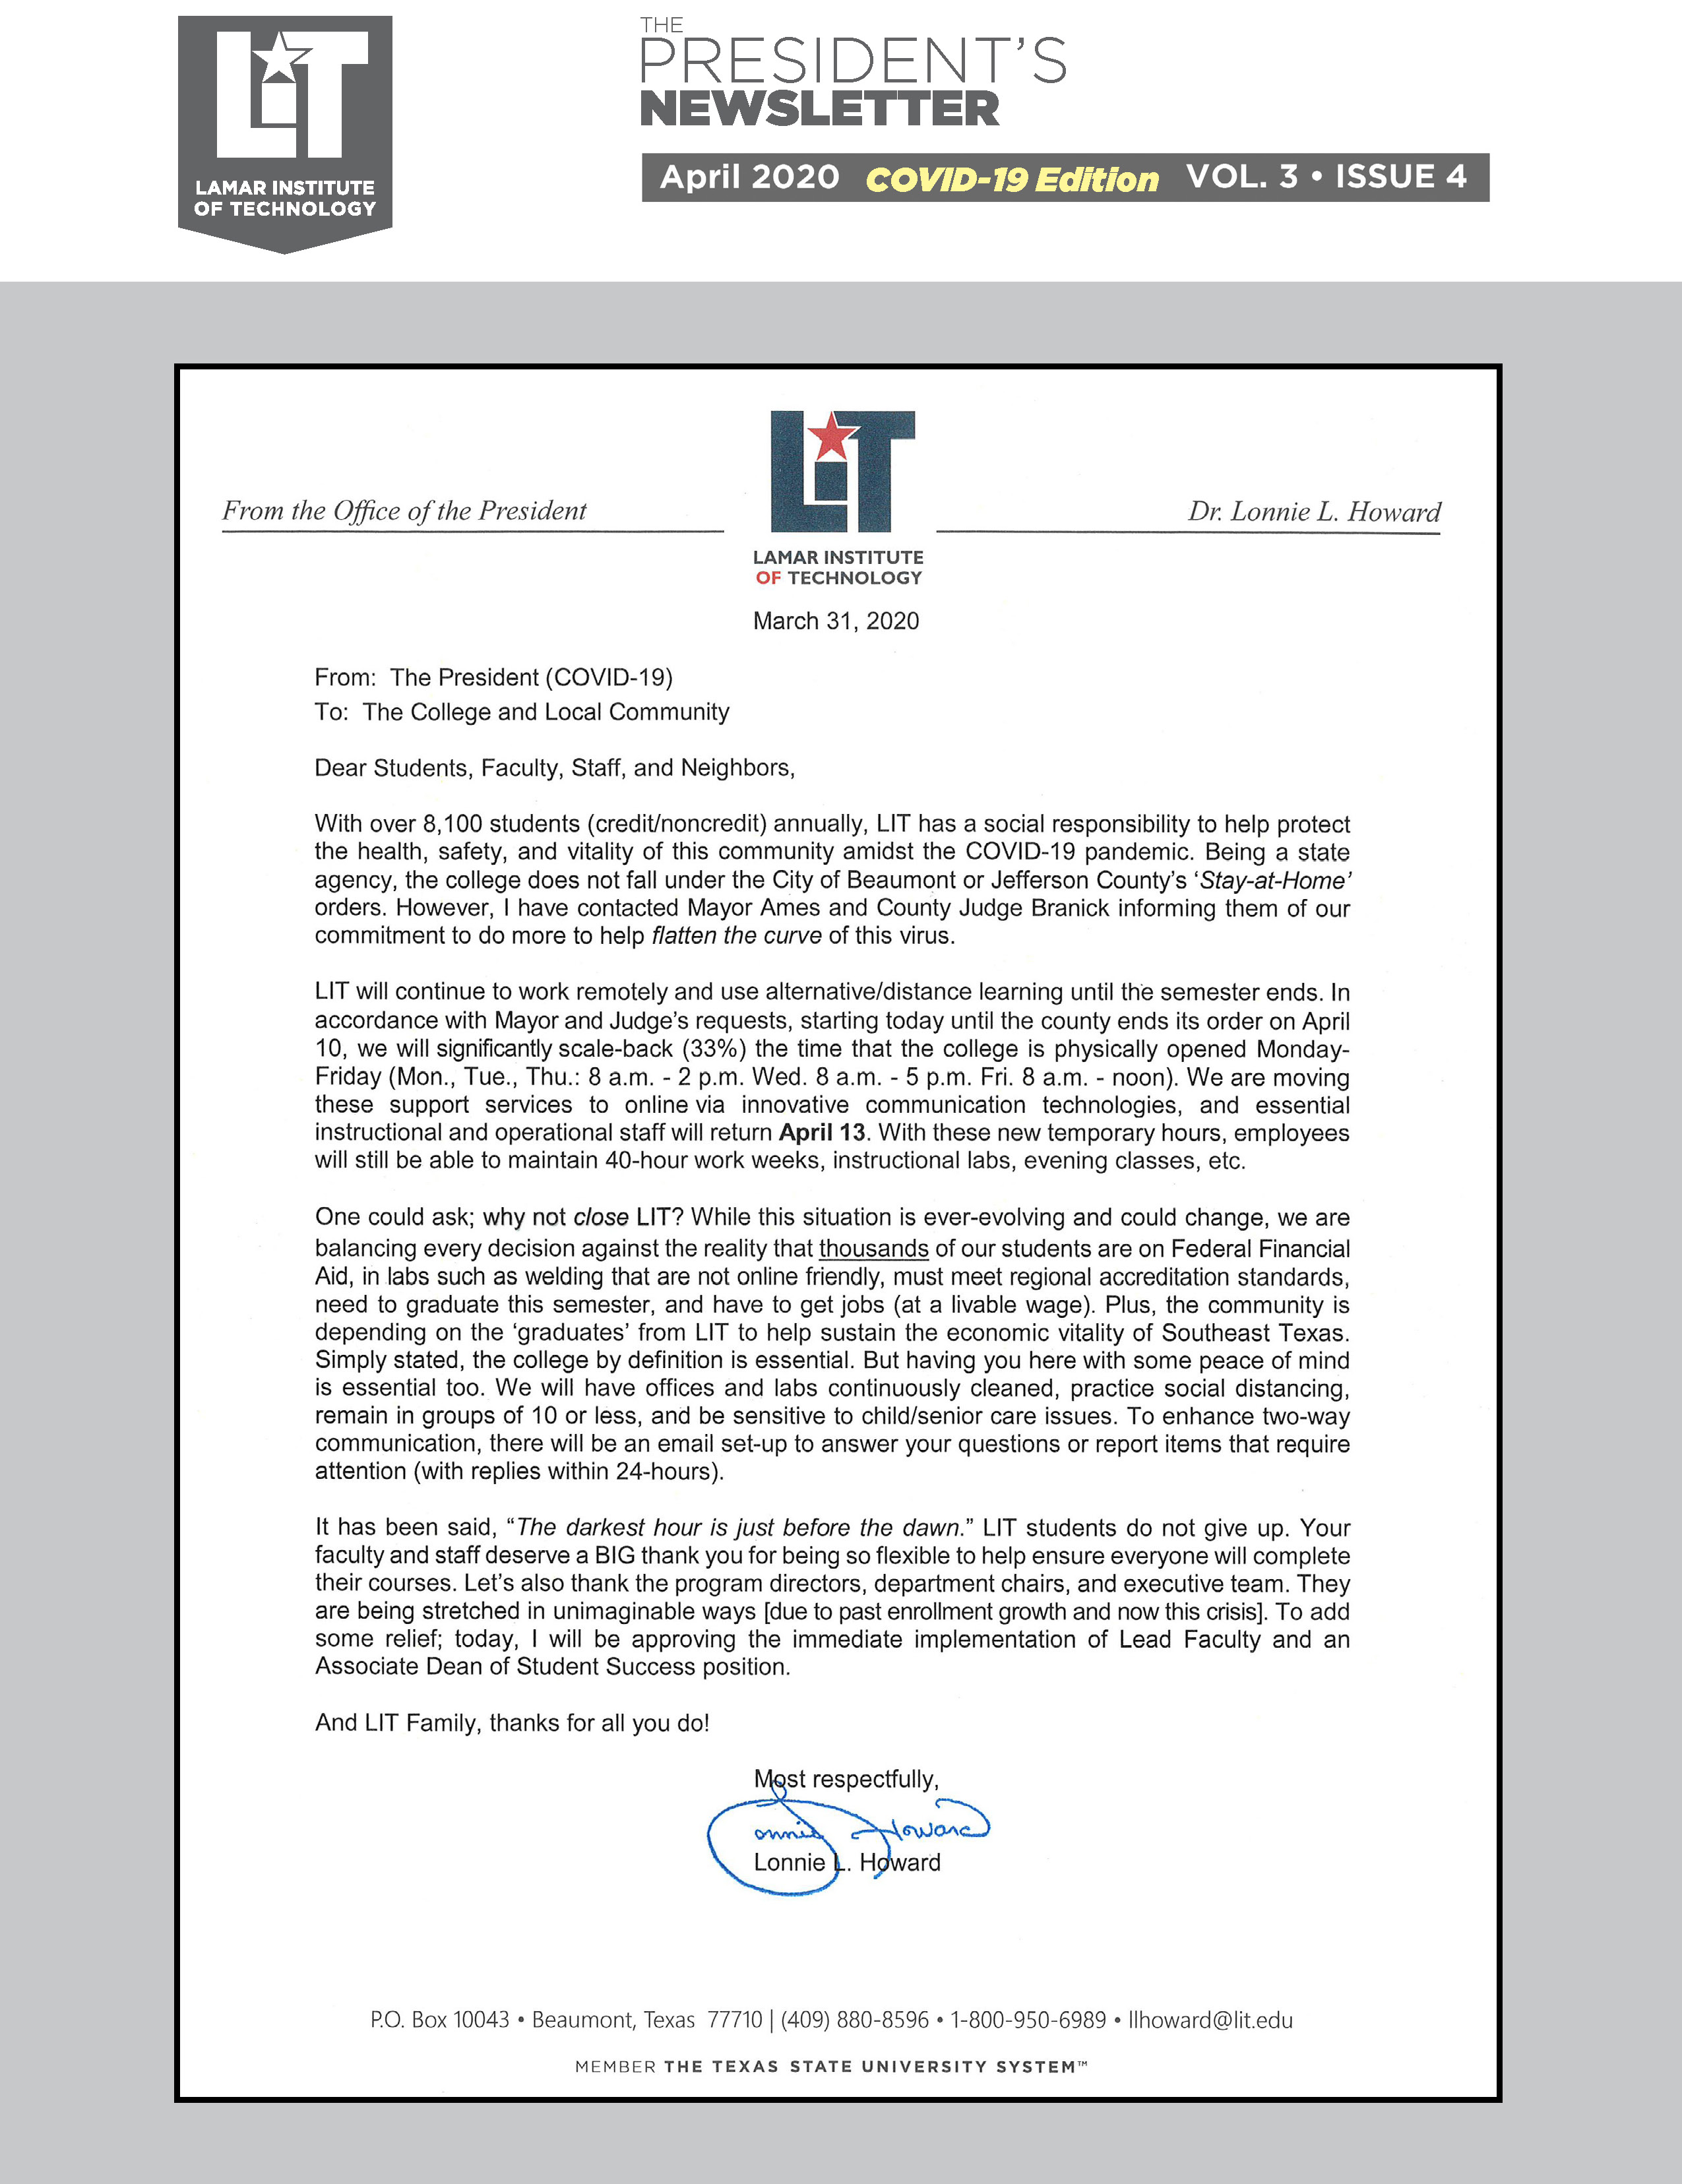 LIT President’s Letter on COVID-19